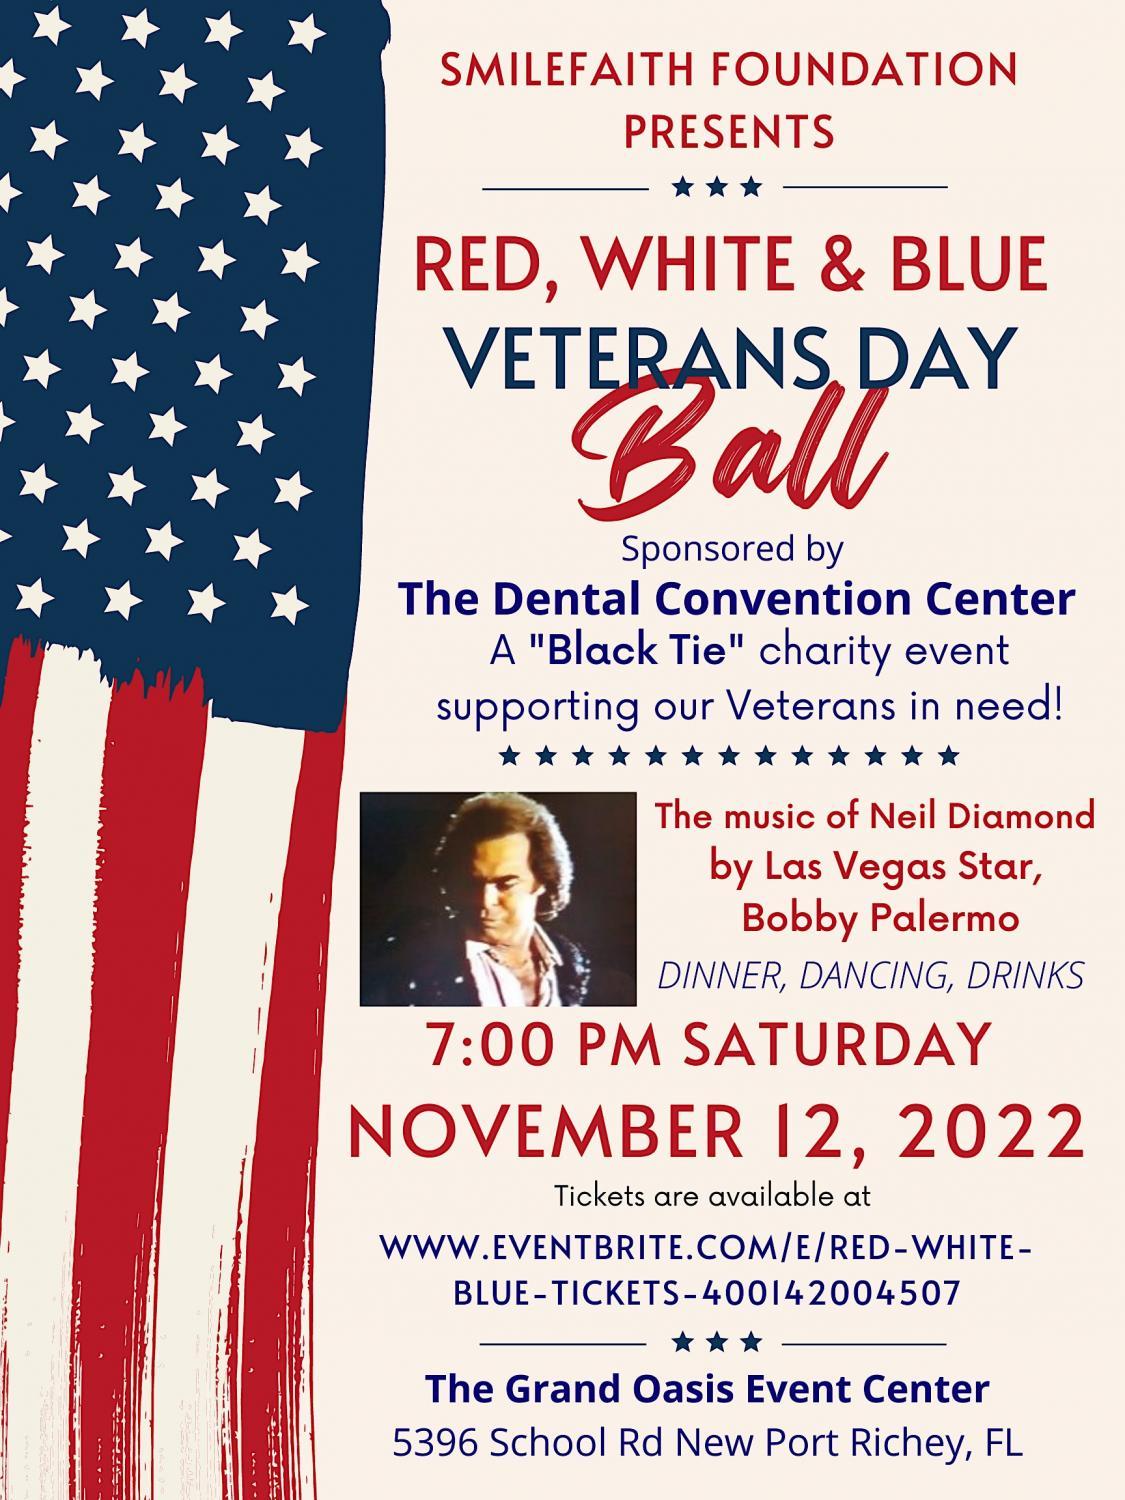 Red, White, & Blue Veterans Day in New Port Richey, FL
Sat Nov 12, 7:00 PM - Sat Nov 12, 10:00 PM
in 8 days